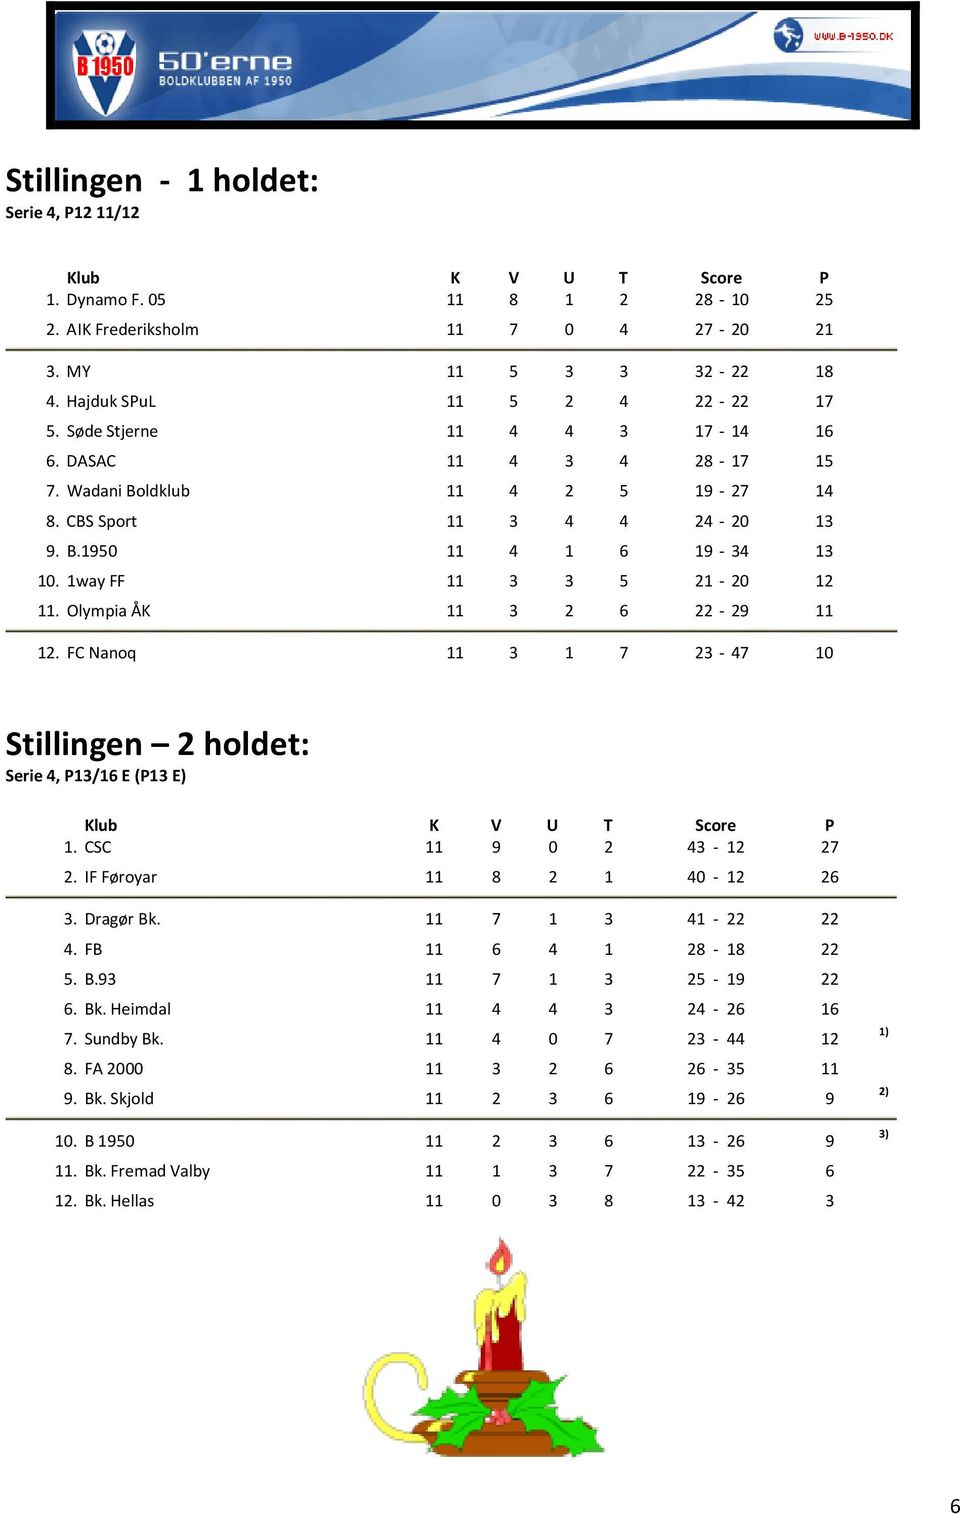 Olympia ÅK 11 3 2 6 22-29 11 12. FC Nanoq 11 3 1 7 23-47 10 Stillingen 2 holdet: Serie 4, P13/16 E (P13 E) Klub K V U T Score P 1. CSC 11 9 0 2 43-12 27 2. IF Føroyar 11 8 2 1 40-12 26 3. Dragør Bk.